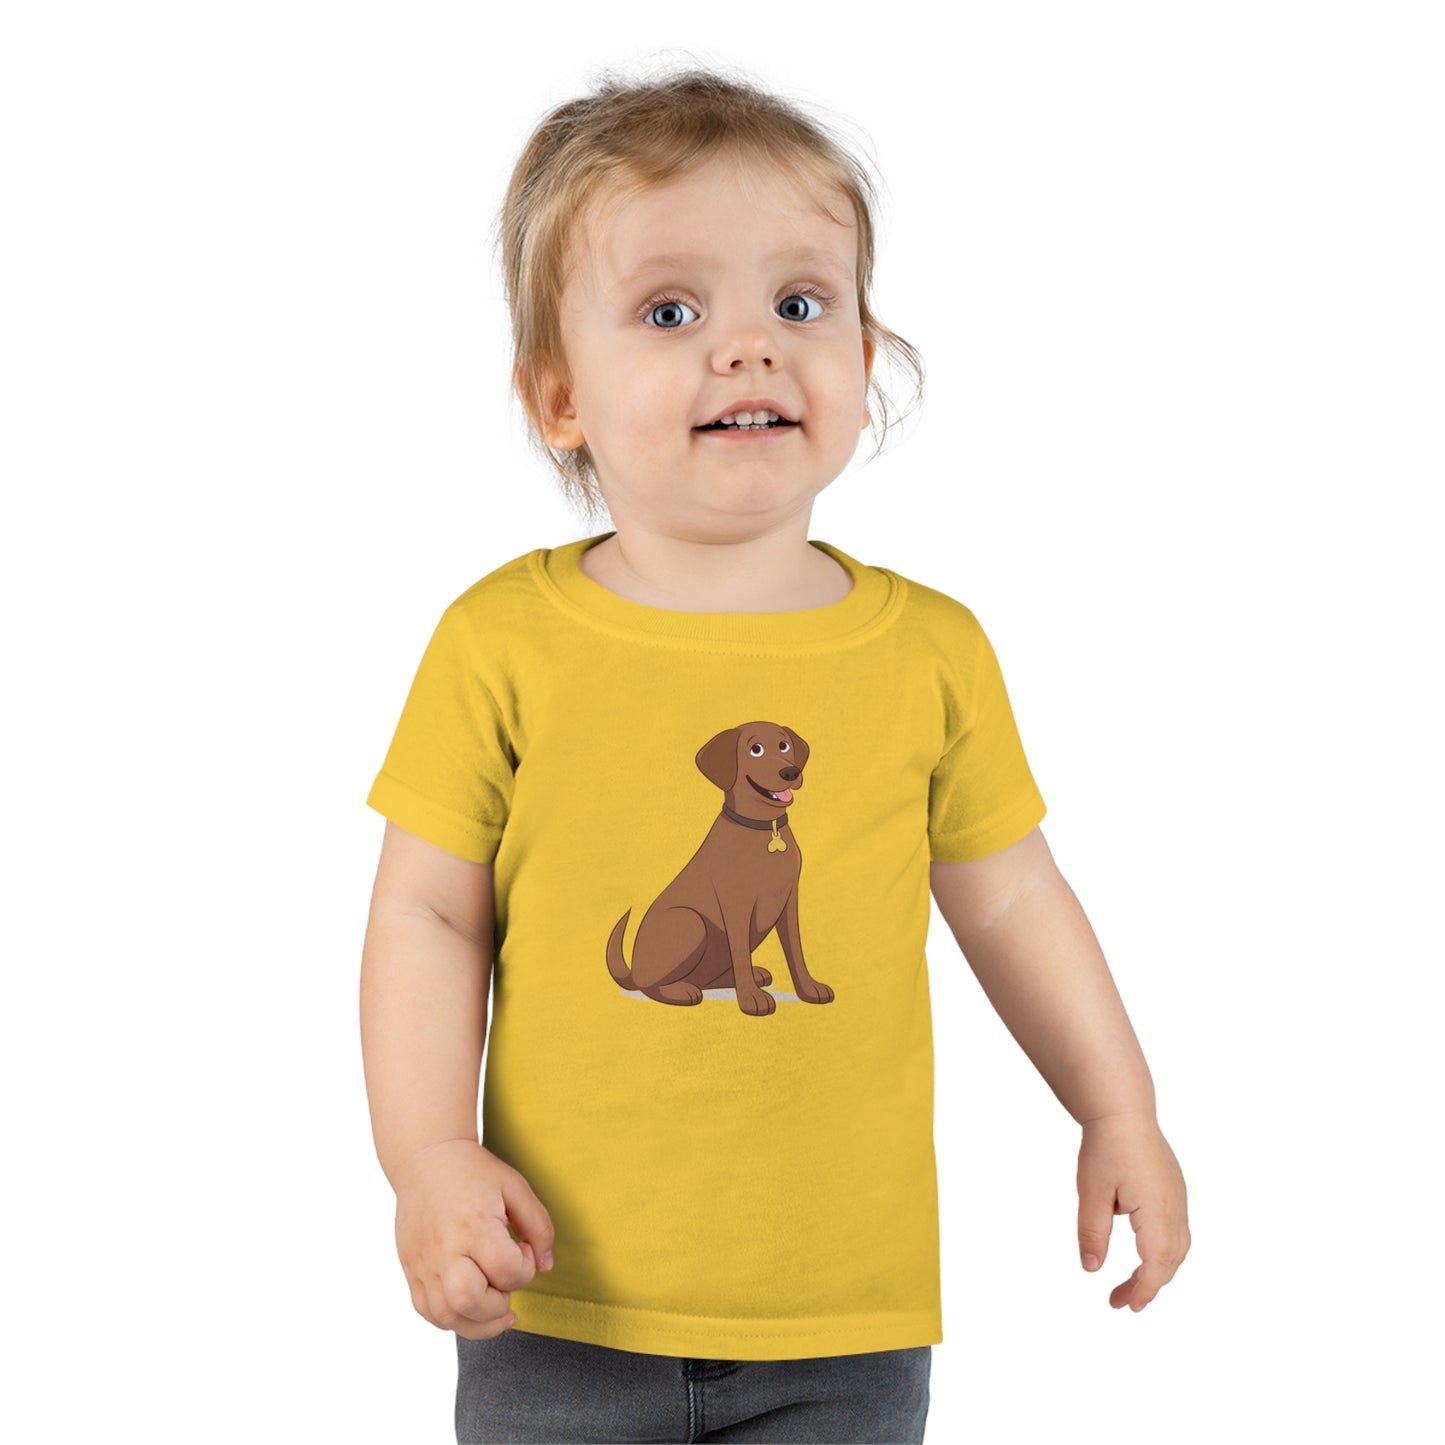 Chocolate Labrador Retriever Toddler T-shirt